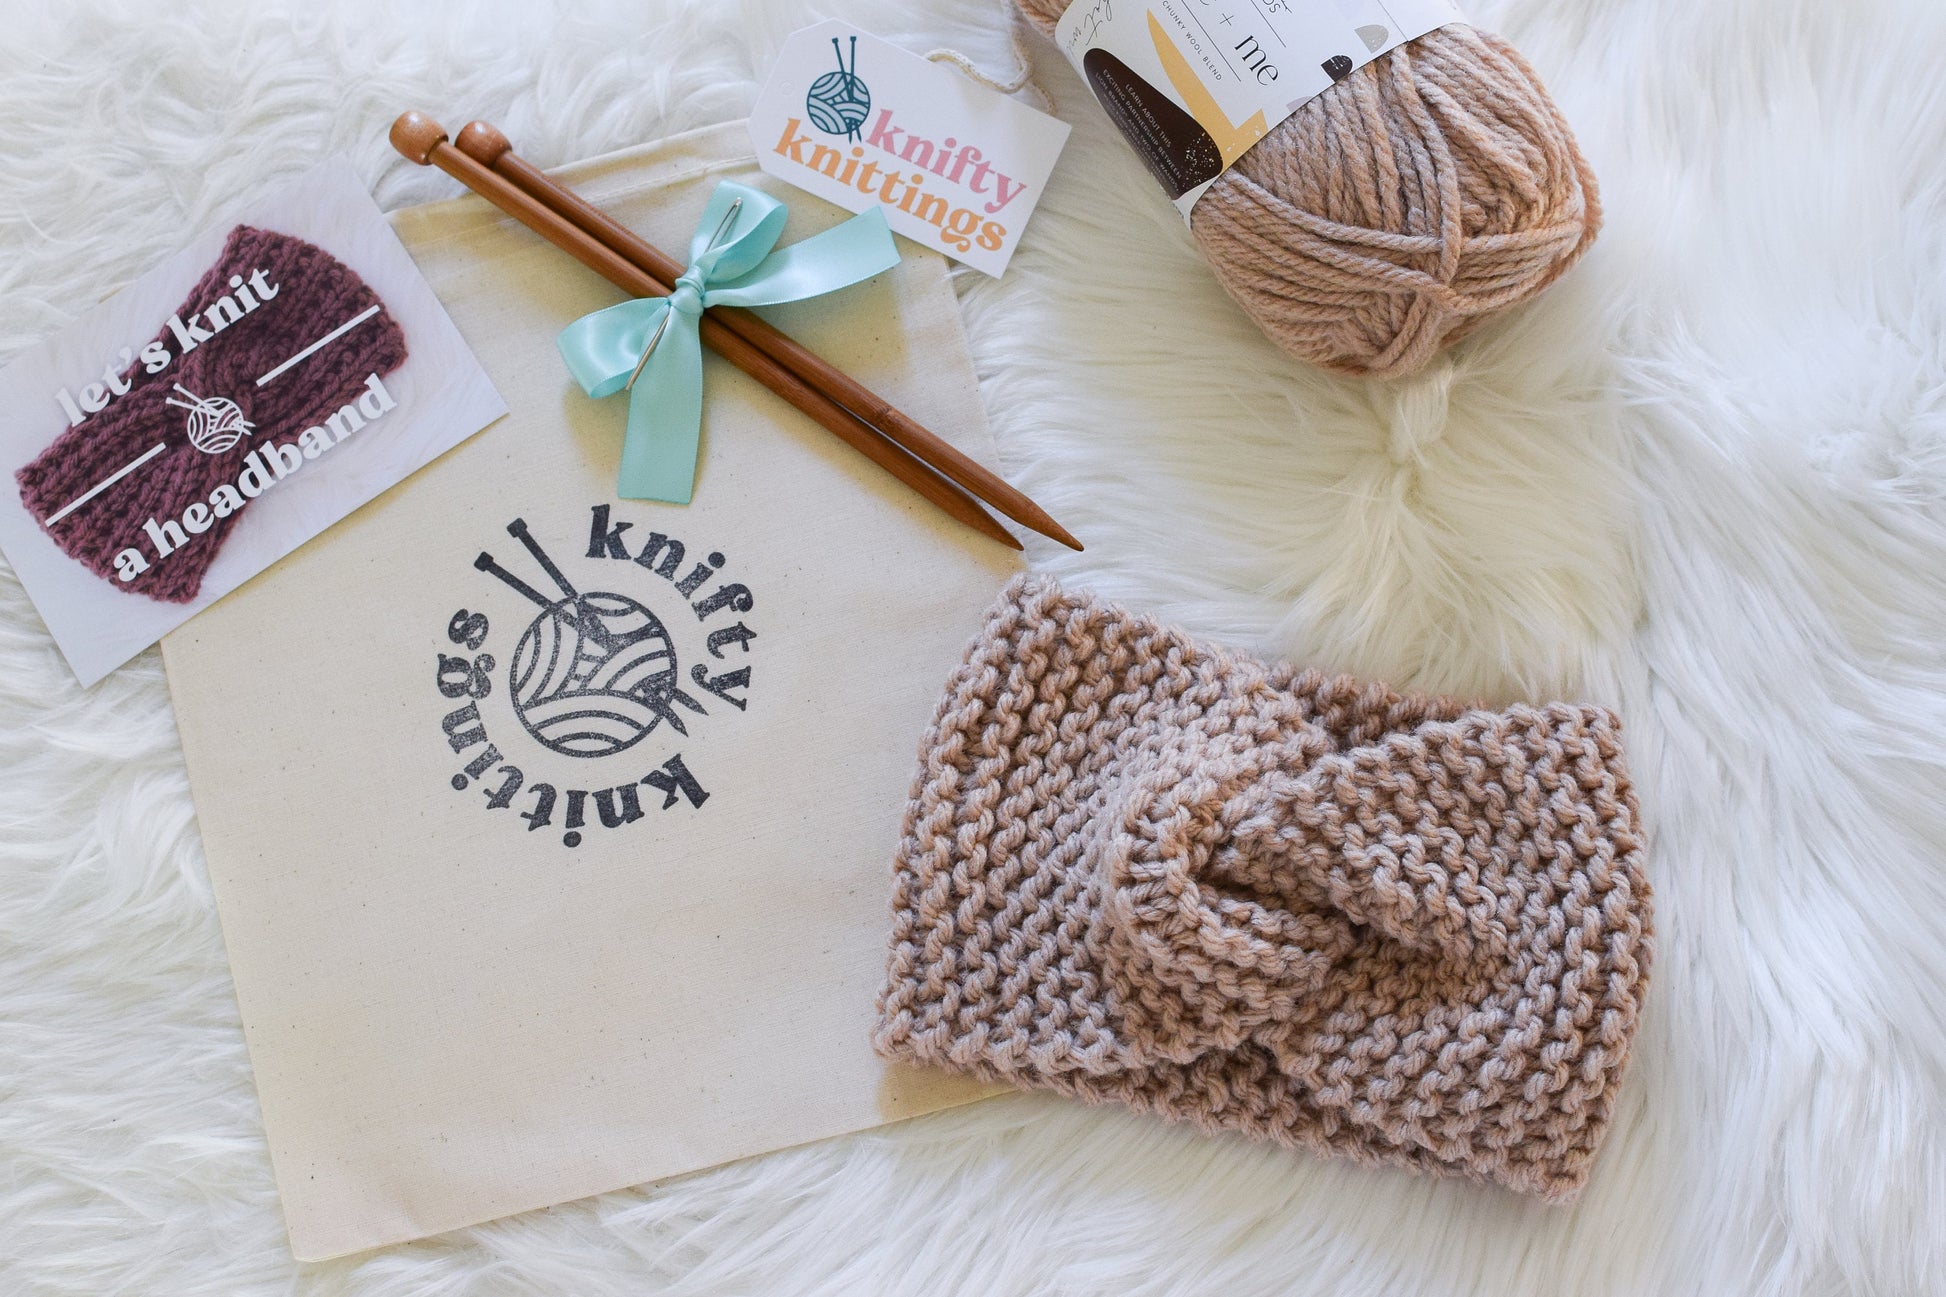 Beginner Knitting Kit // Headband Knitting Kit // Earwarmer Knitting Kit // Knit Kit // Learn To Knit Kit // DIY Gift Ideas